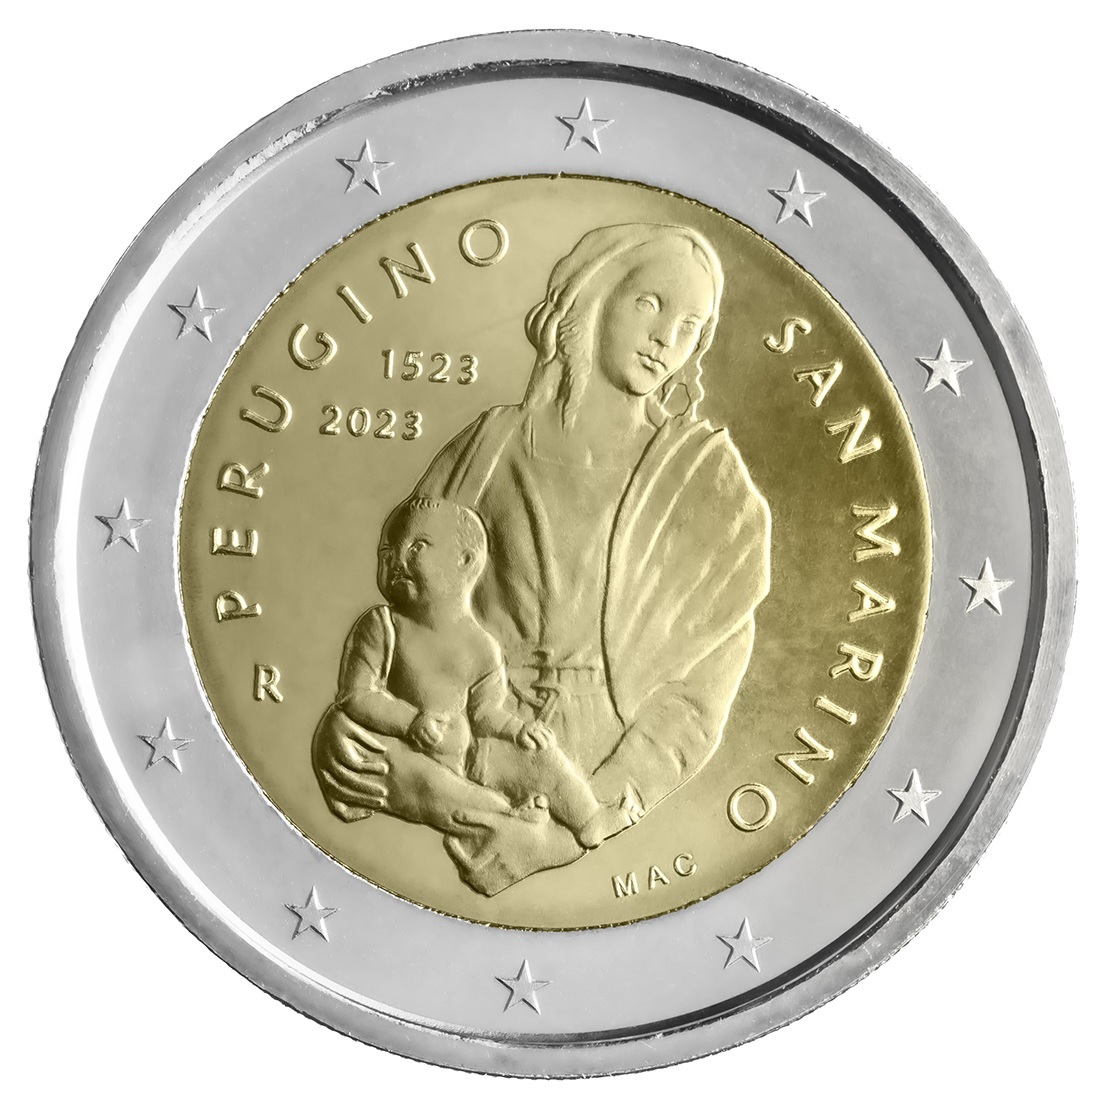 2 euro San Marino 2023 BU - Perugino (zoom)